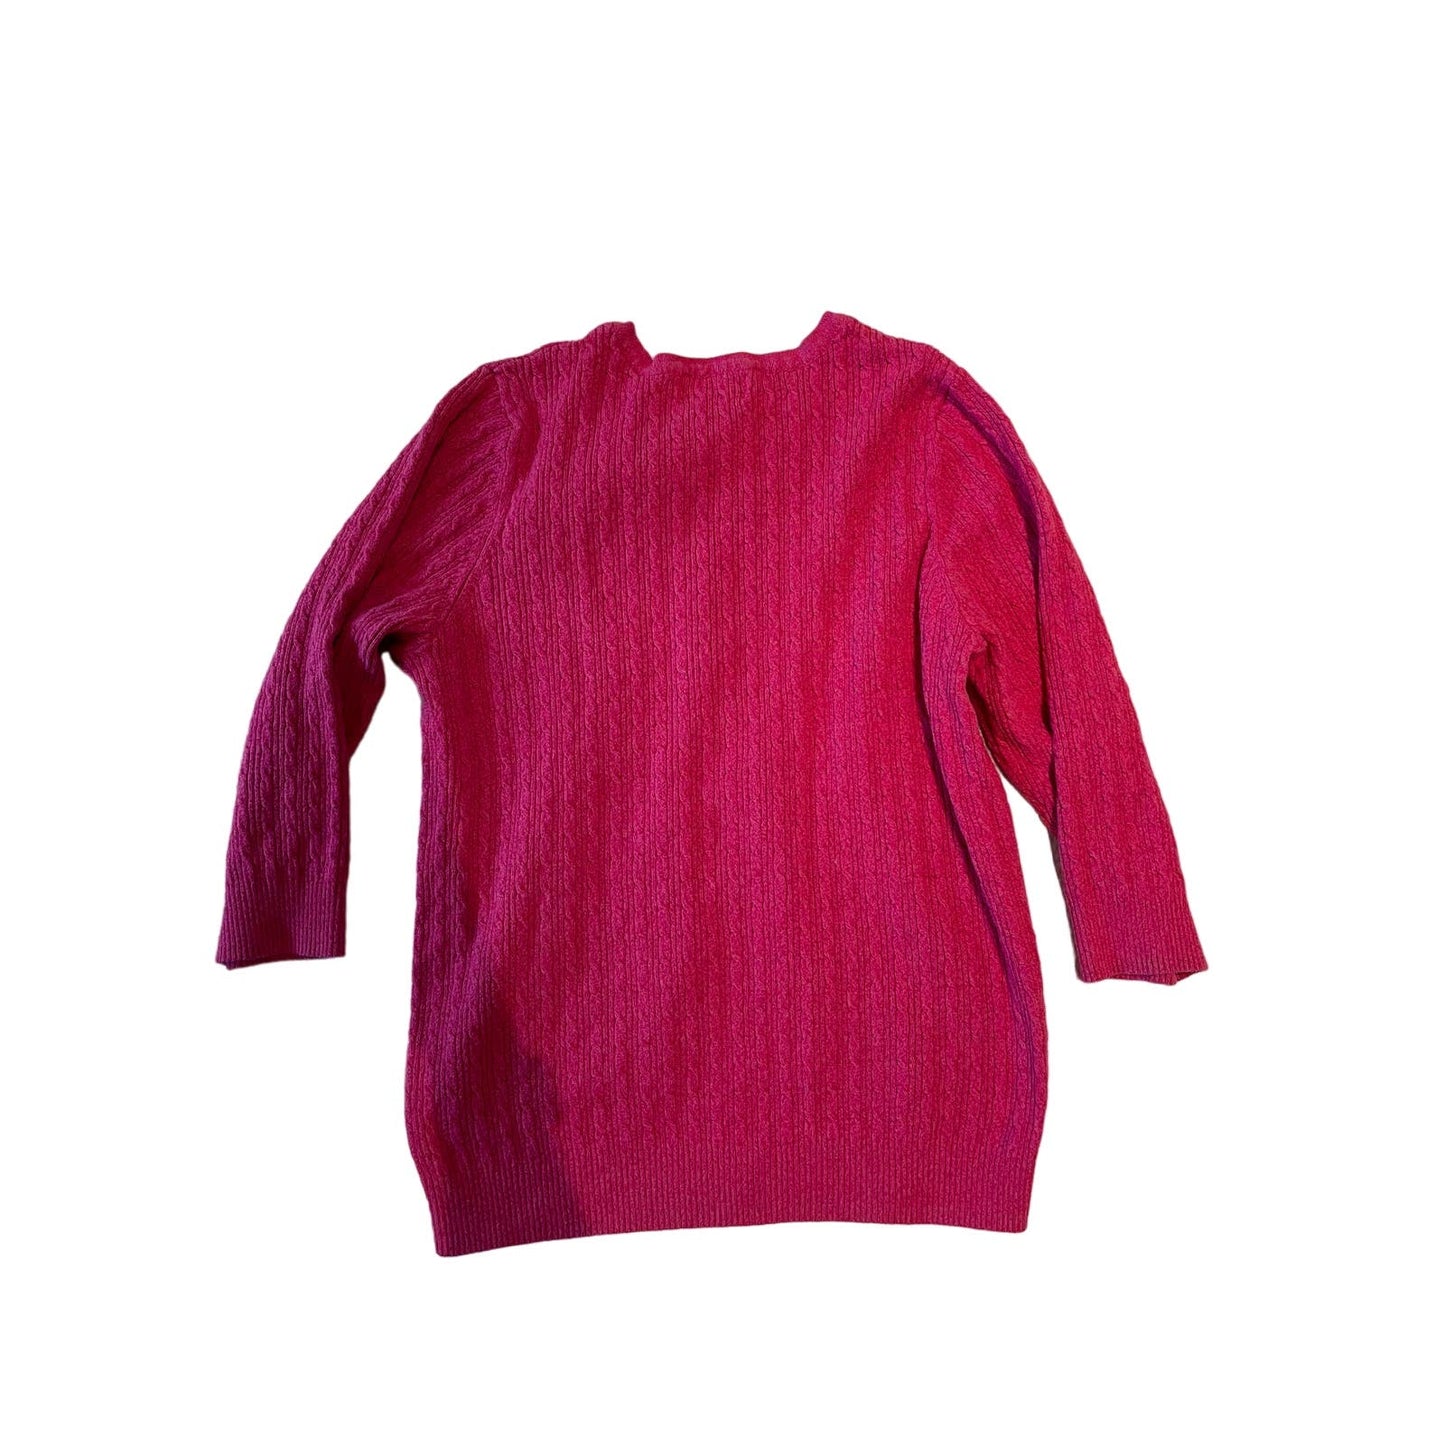 Karen Scott Women's Size Small Pink Button Up Sweater 1/4 Button Long Sleeve